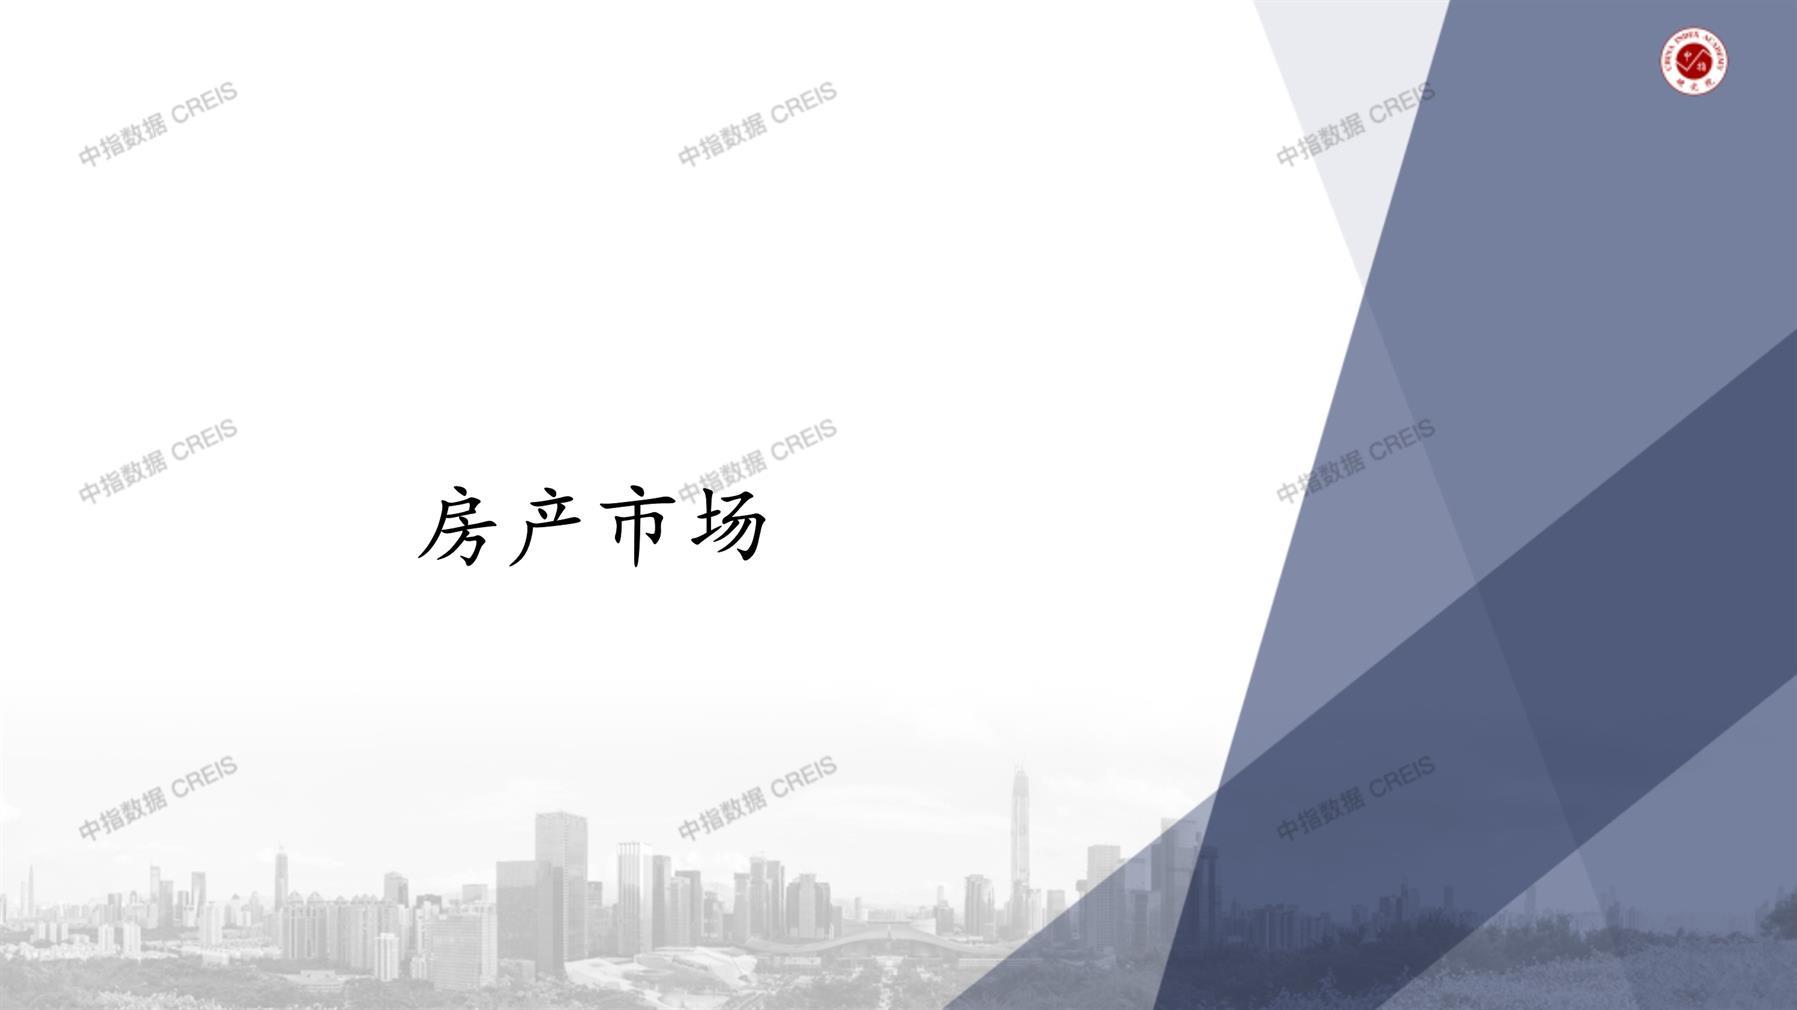 南京、南京房地产市场、商品房销售、住宅成交、土地市场、地块面积、南京写字楼